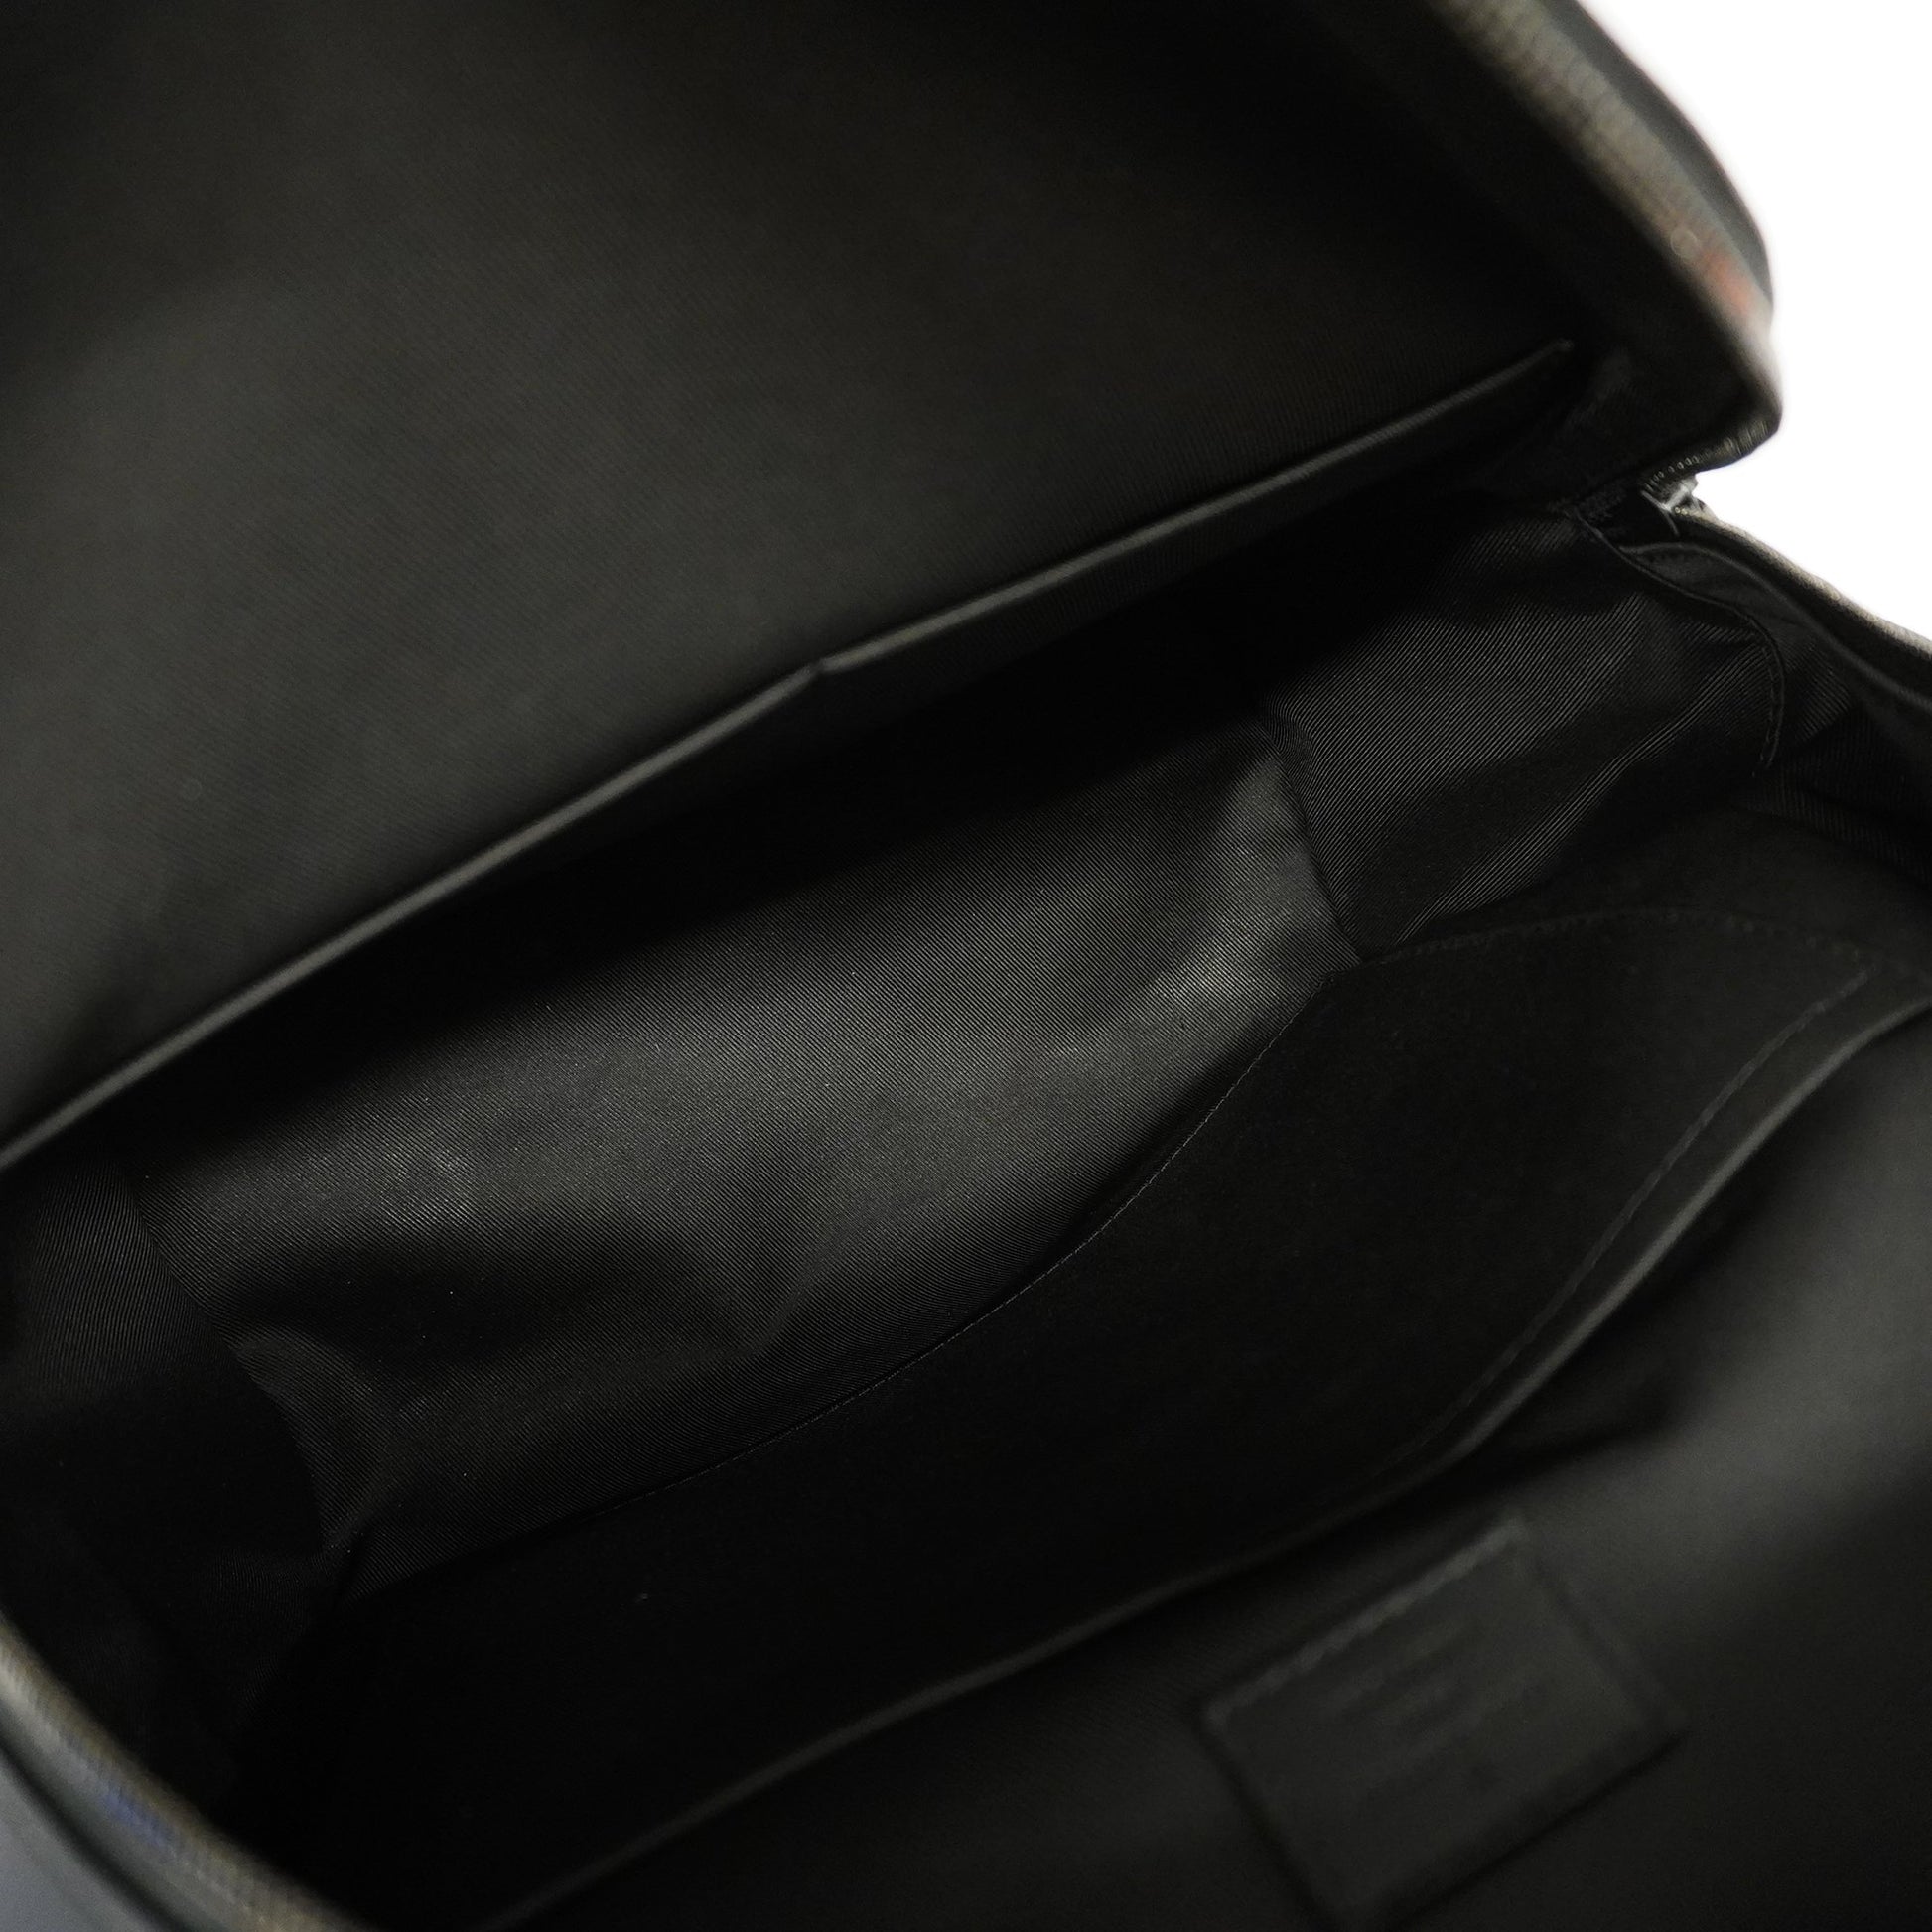 Shop Louis Vuitton Backpack (M57079) by luxurysuite